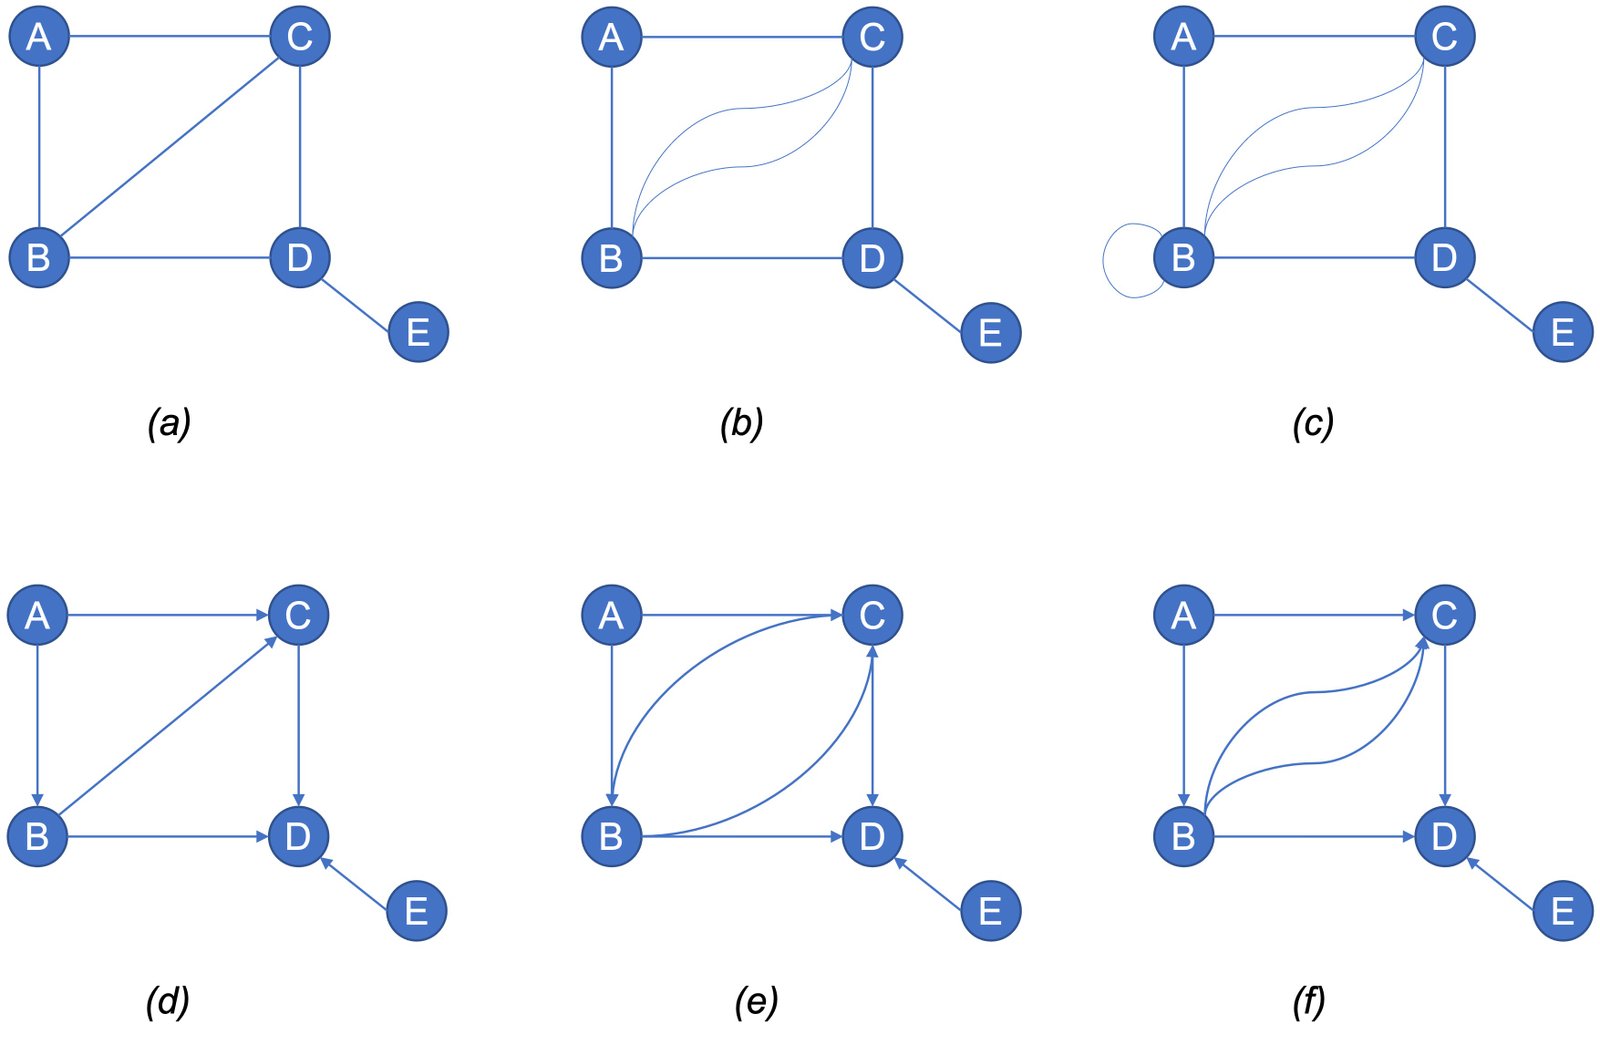 Hình 4. (a) đơn đồ thị vô hướng, (b) đa đồ thị vô hướng, (c) giả đồ thị vô hướng, (d, e) đơn đồ thị có hướng, (f) đa đồ thị có hướng